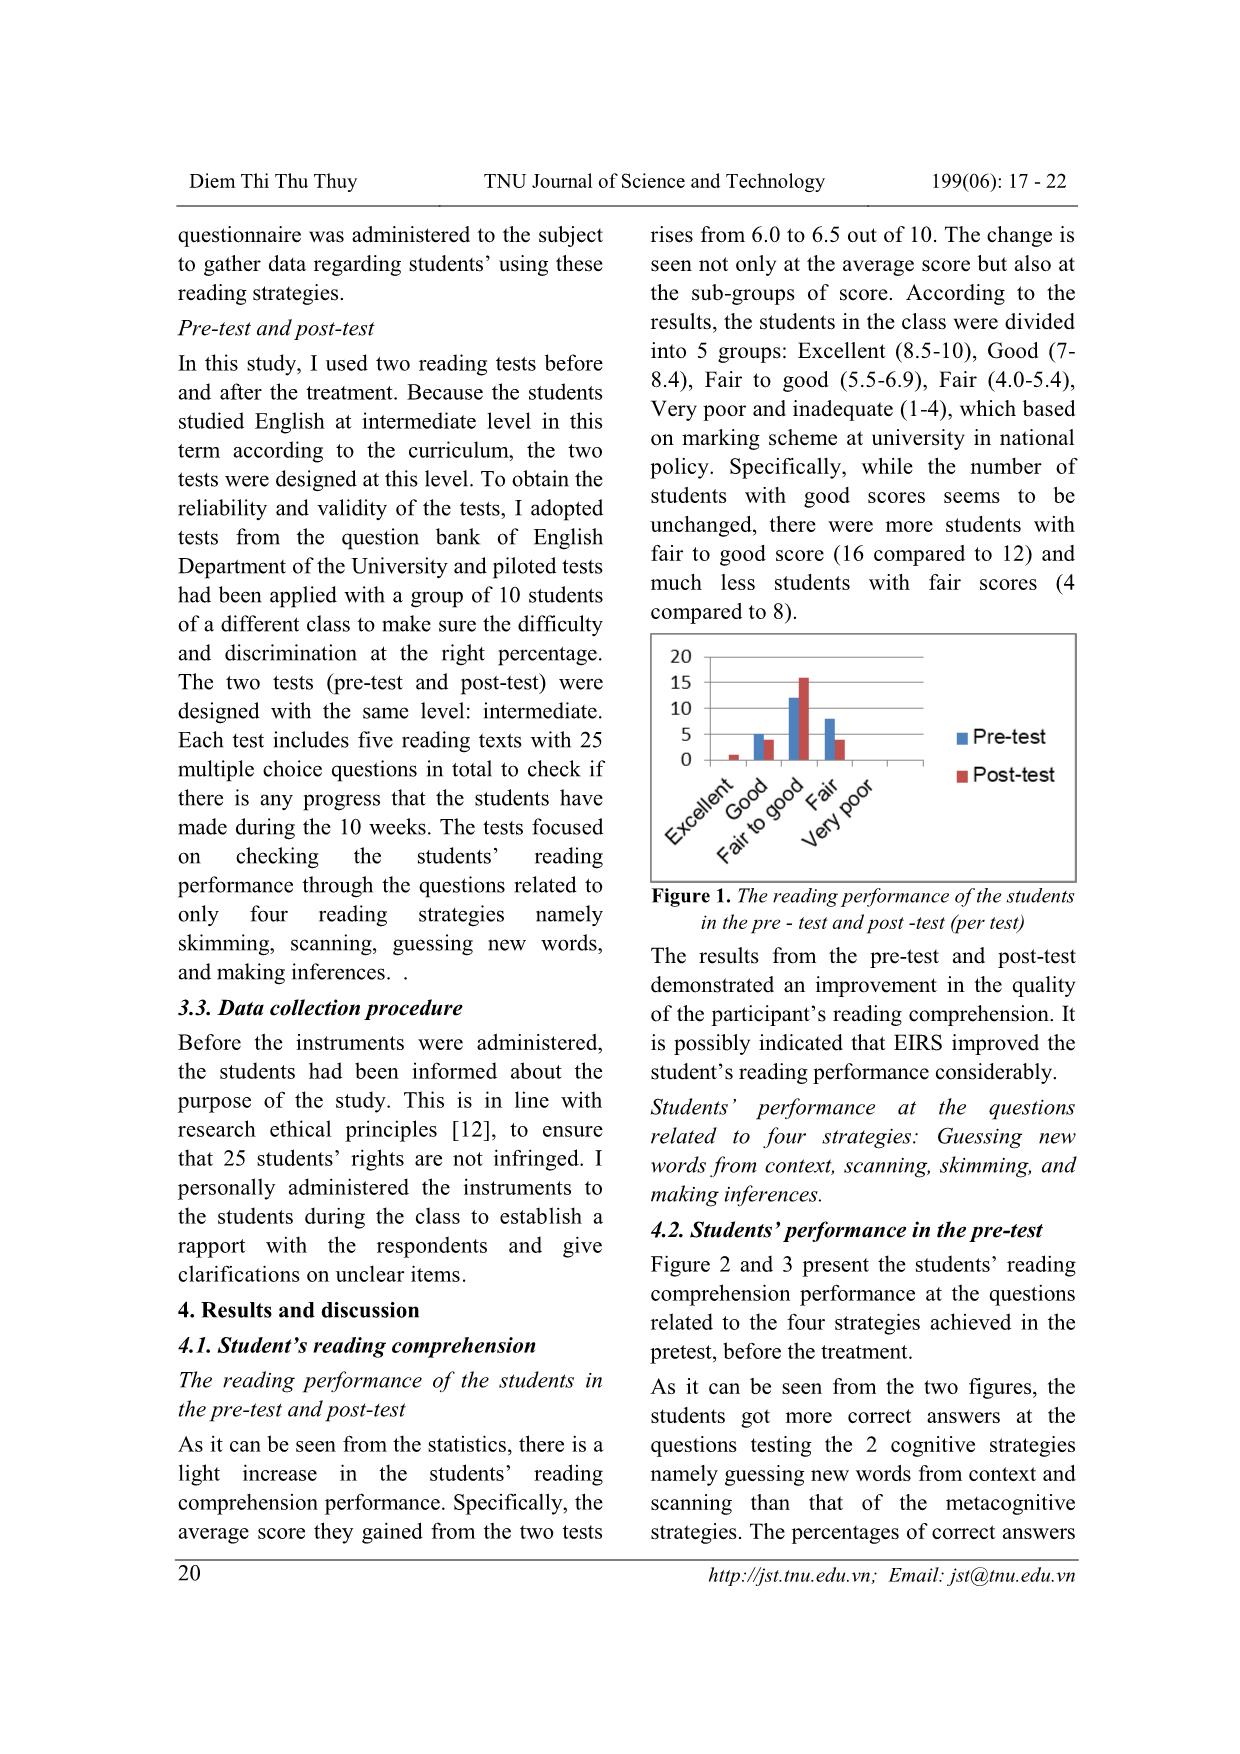 Ảnh hưởng của lời dẫn tường minh cho các chiến lược đọc đến kỹ năng đọc hiểu tại khoa Ngoại ngữ, Đại học Thái Nguyên trang 4